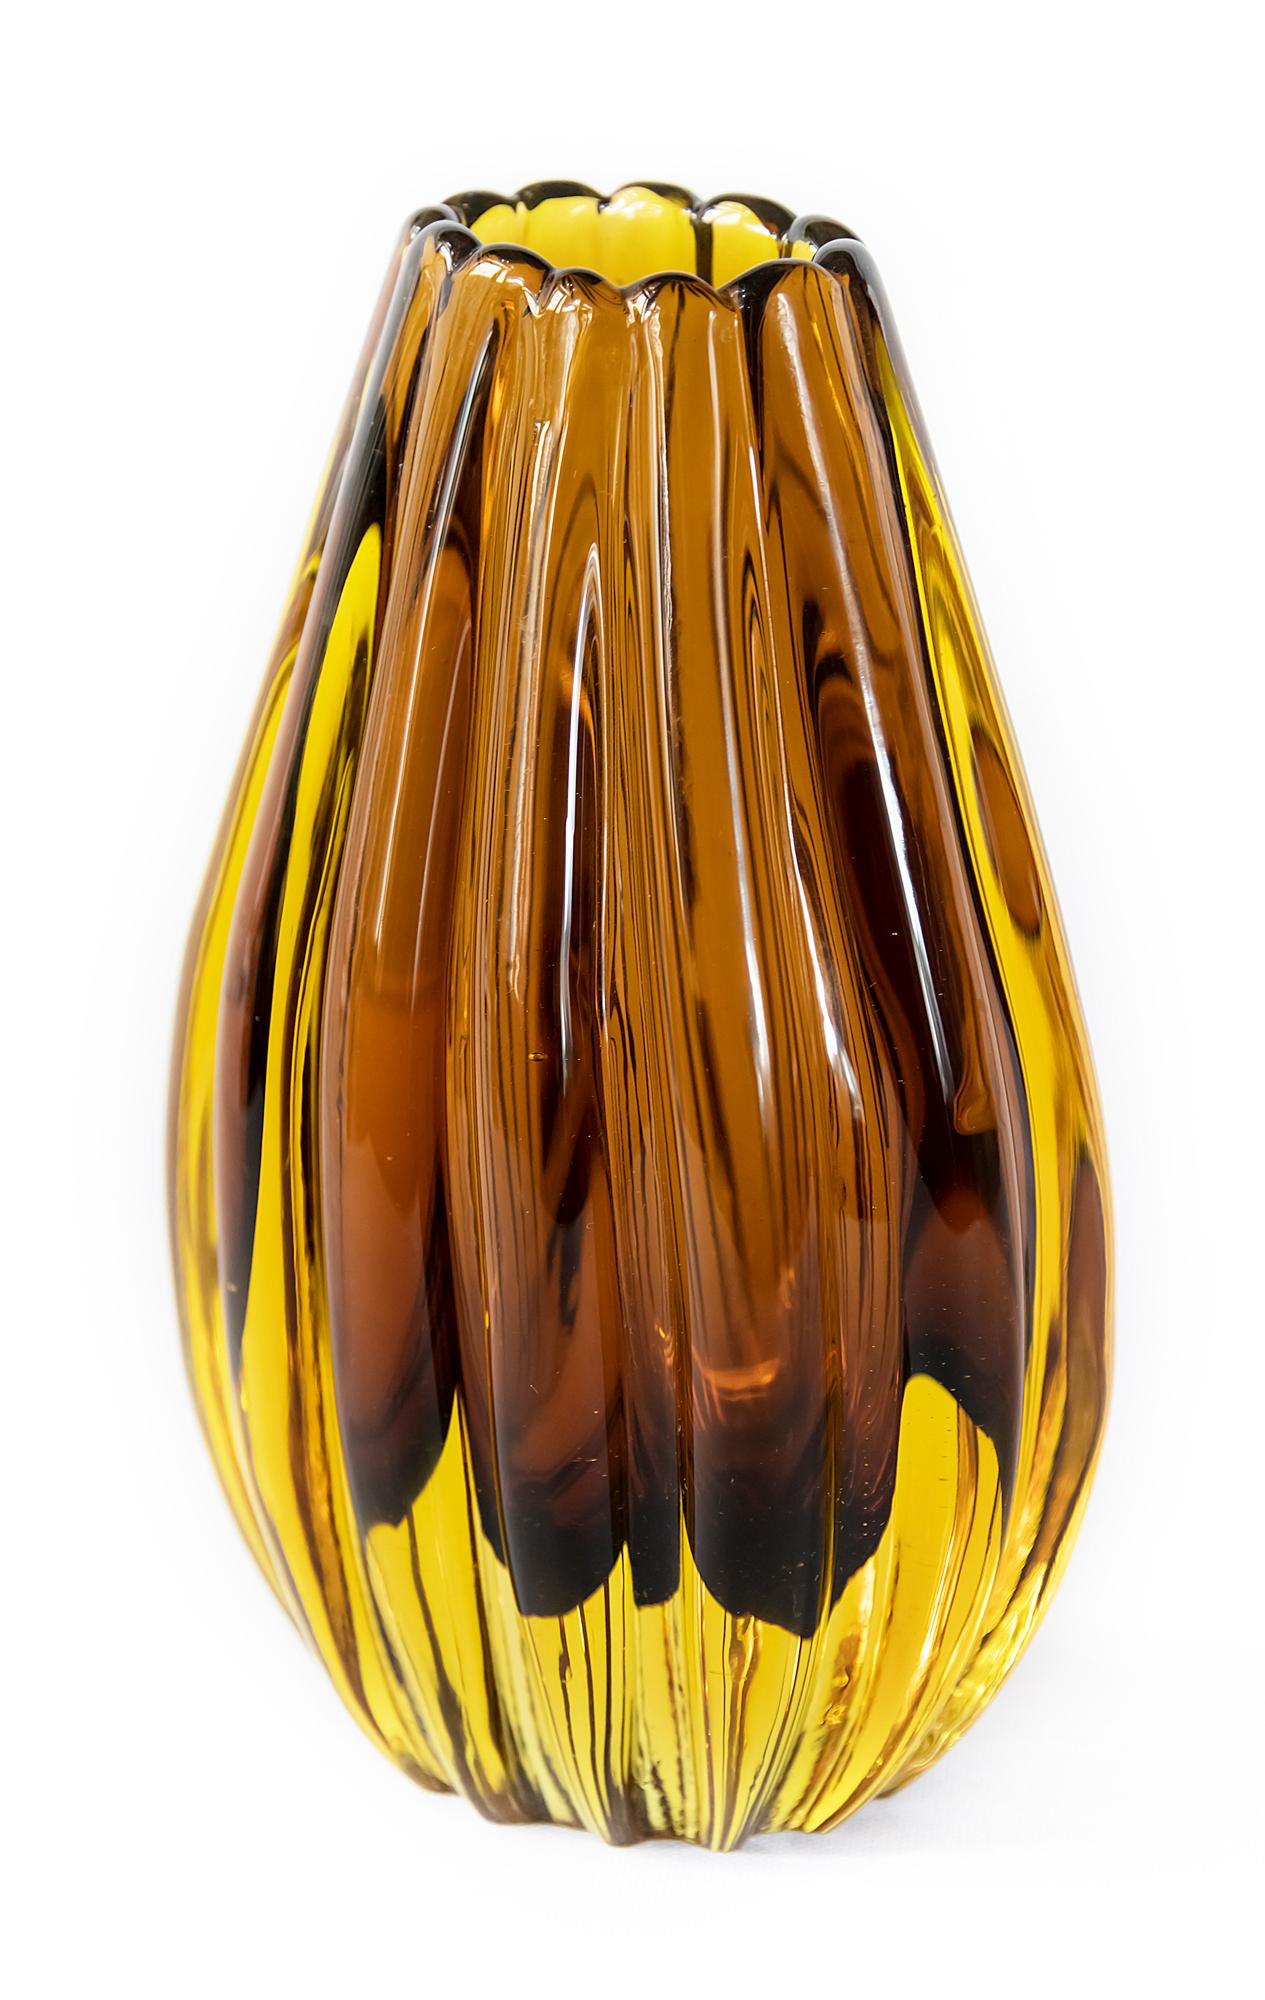 Petit vase en verre de Murano fabriqué à la main au milieu du siècle dernier, de couleur ambrée, créé par Flavio Poli pour Seguso, dans les années 1950/60.
Signé en bas.
   